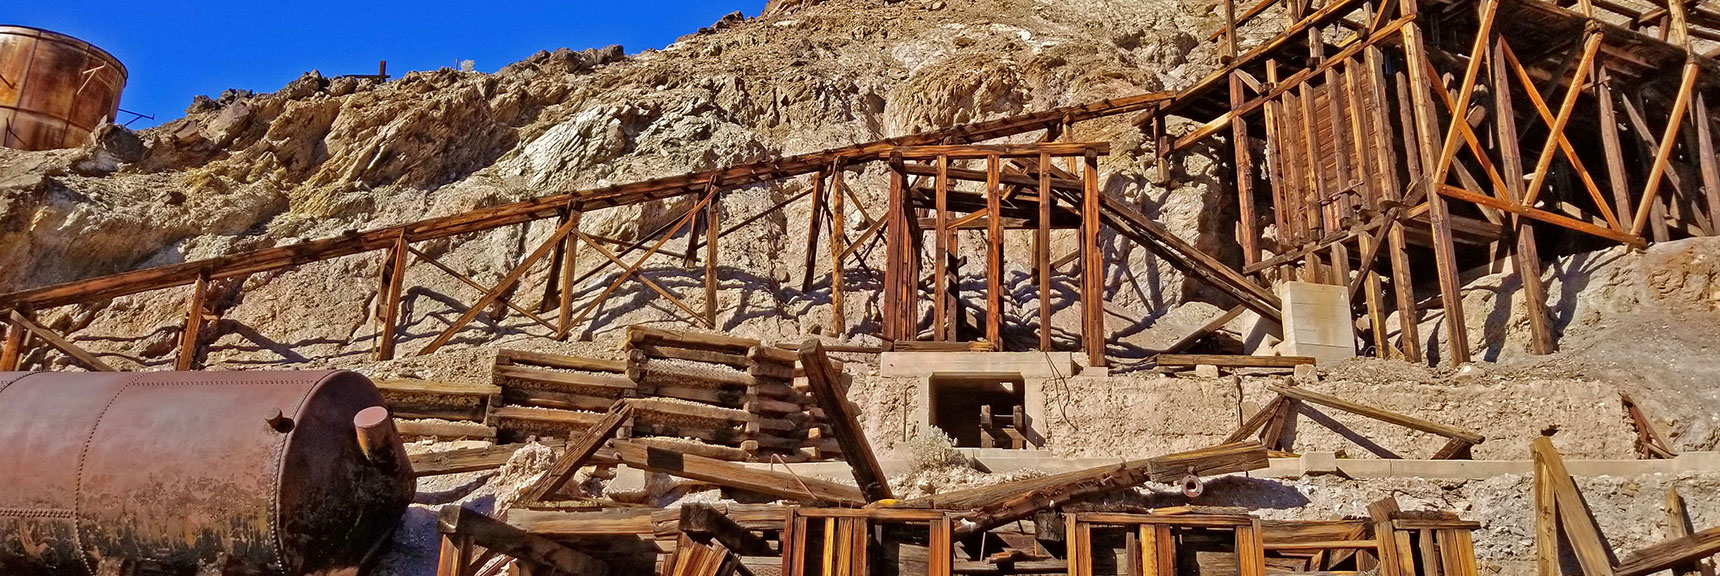 Lower Stamp Mill | Keane Wonder Mine | Death Valley National Park, Californi